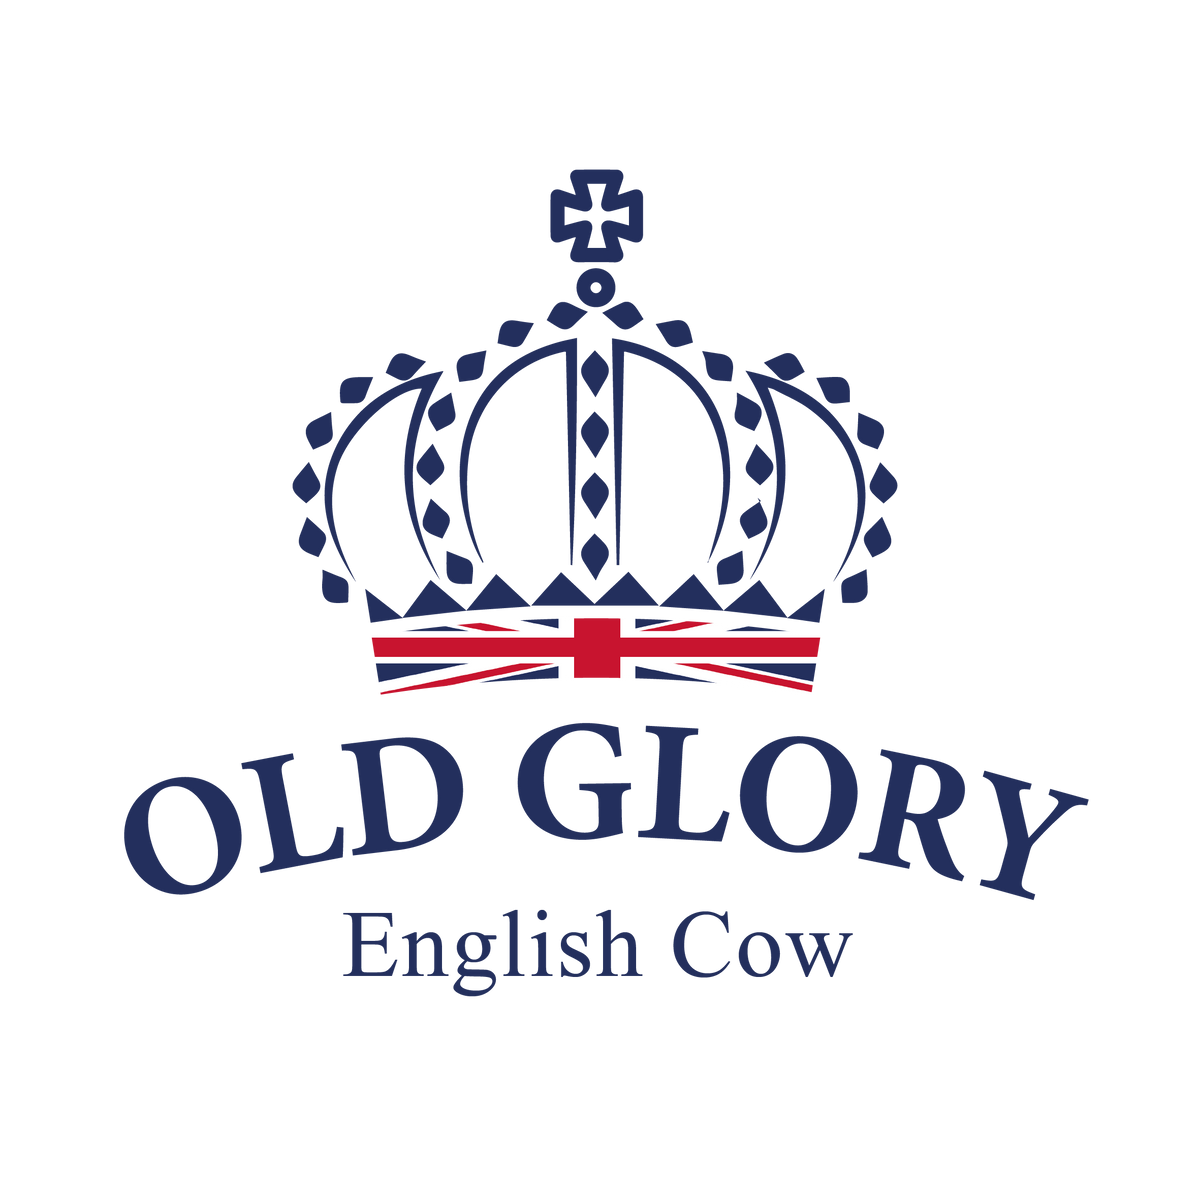 Ribeye Old Glory English Cow